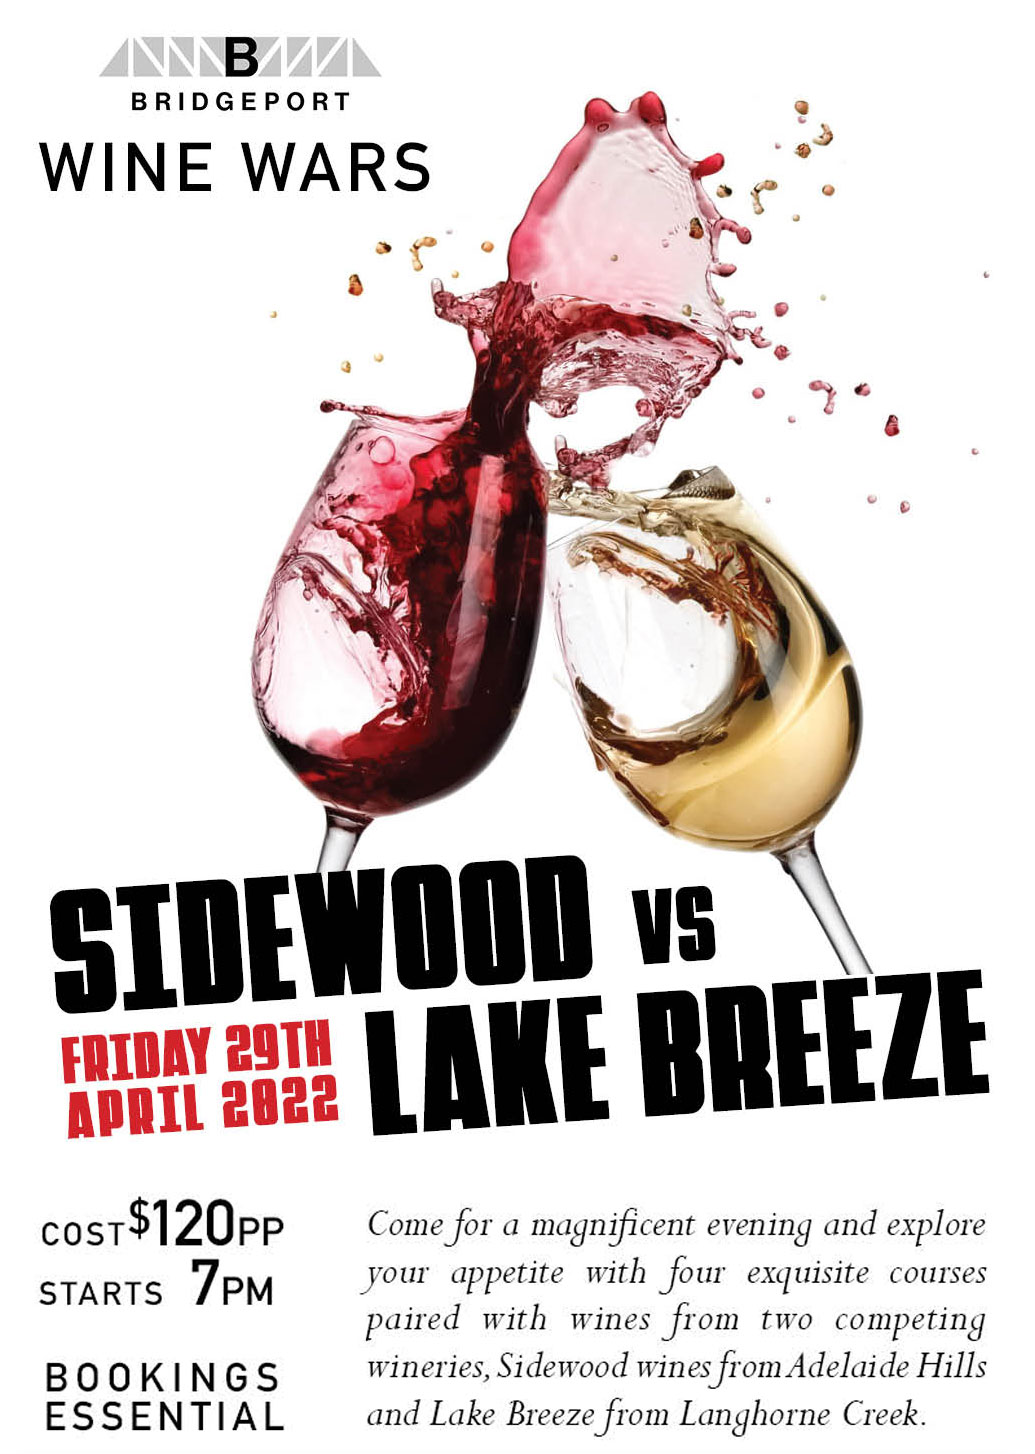 Wine Wars - Wine pairing with food - food tasting - Sidewood Wines Vs Lake Breeze - Function at Bridgeport